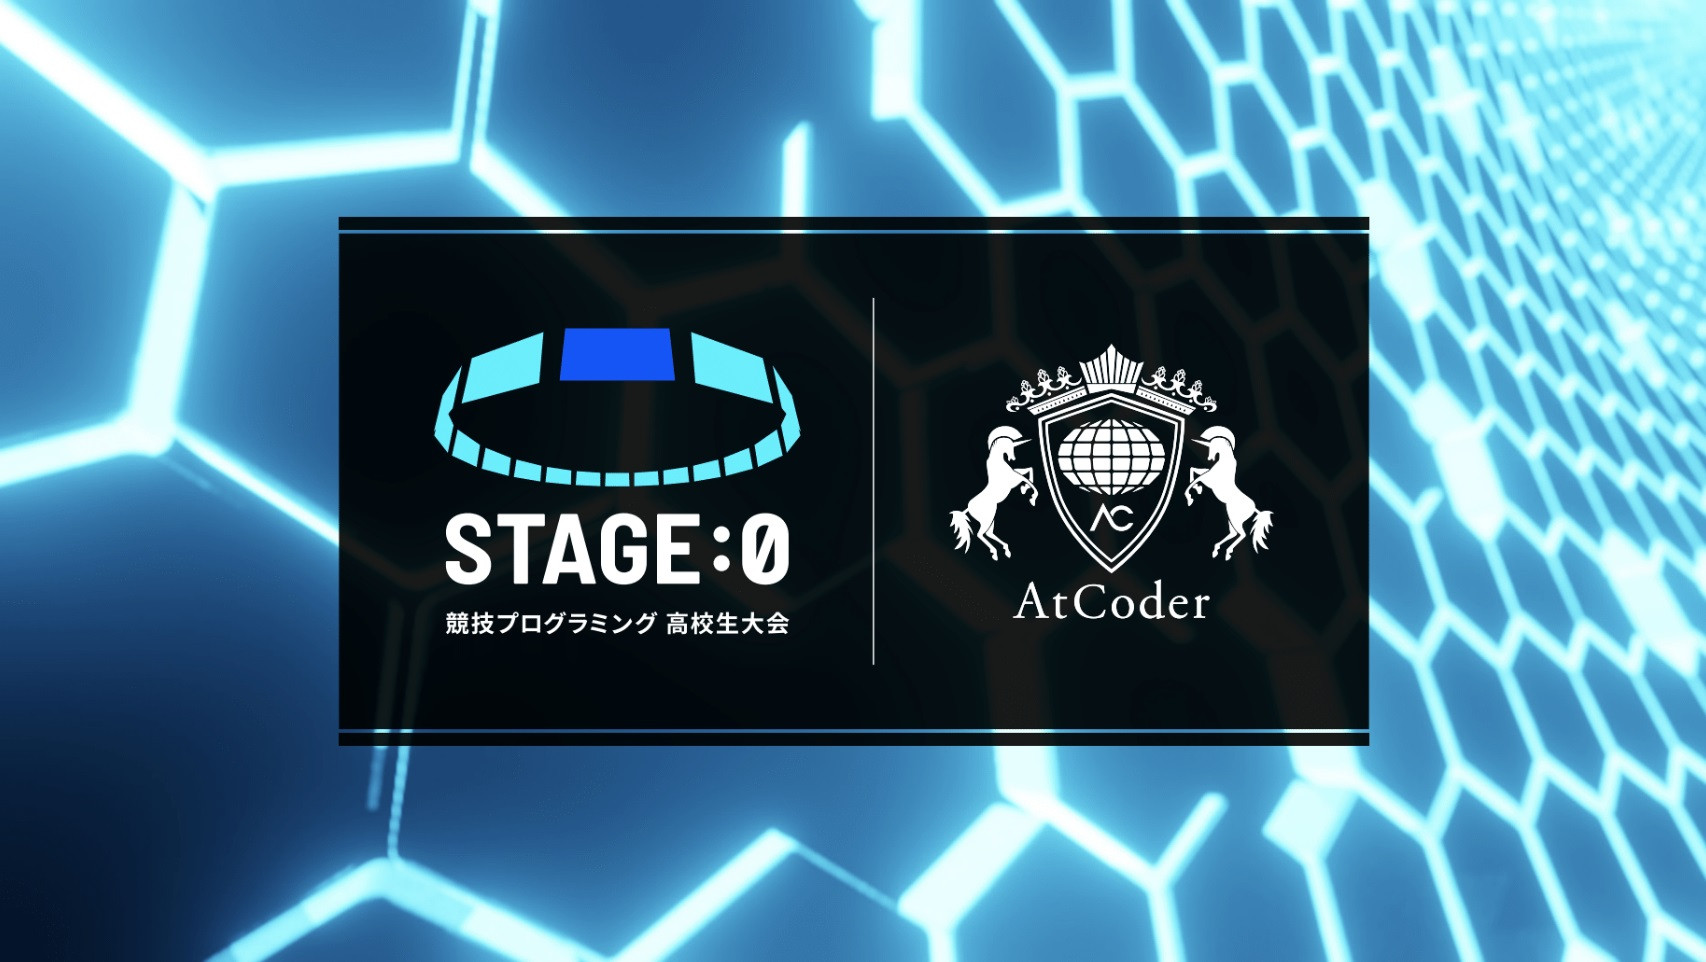 【大会情報】STAGE:0 競技プログラミング 高校生大会 powered by AtCoder【2021年8月7日】